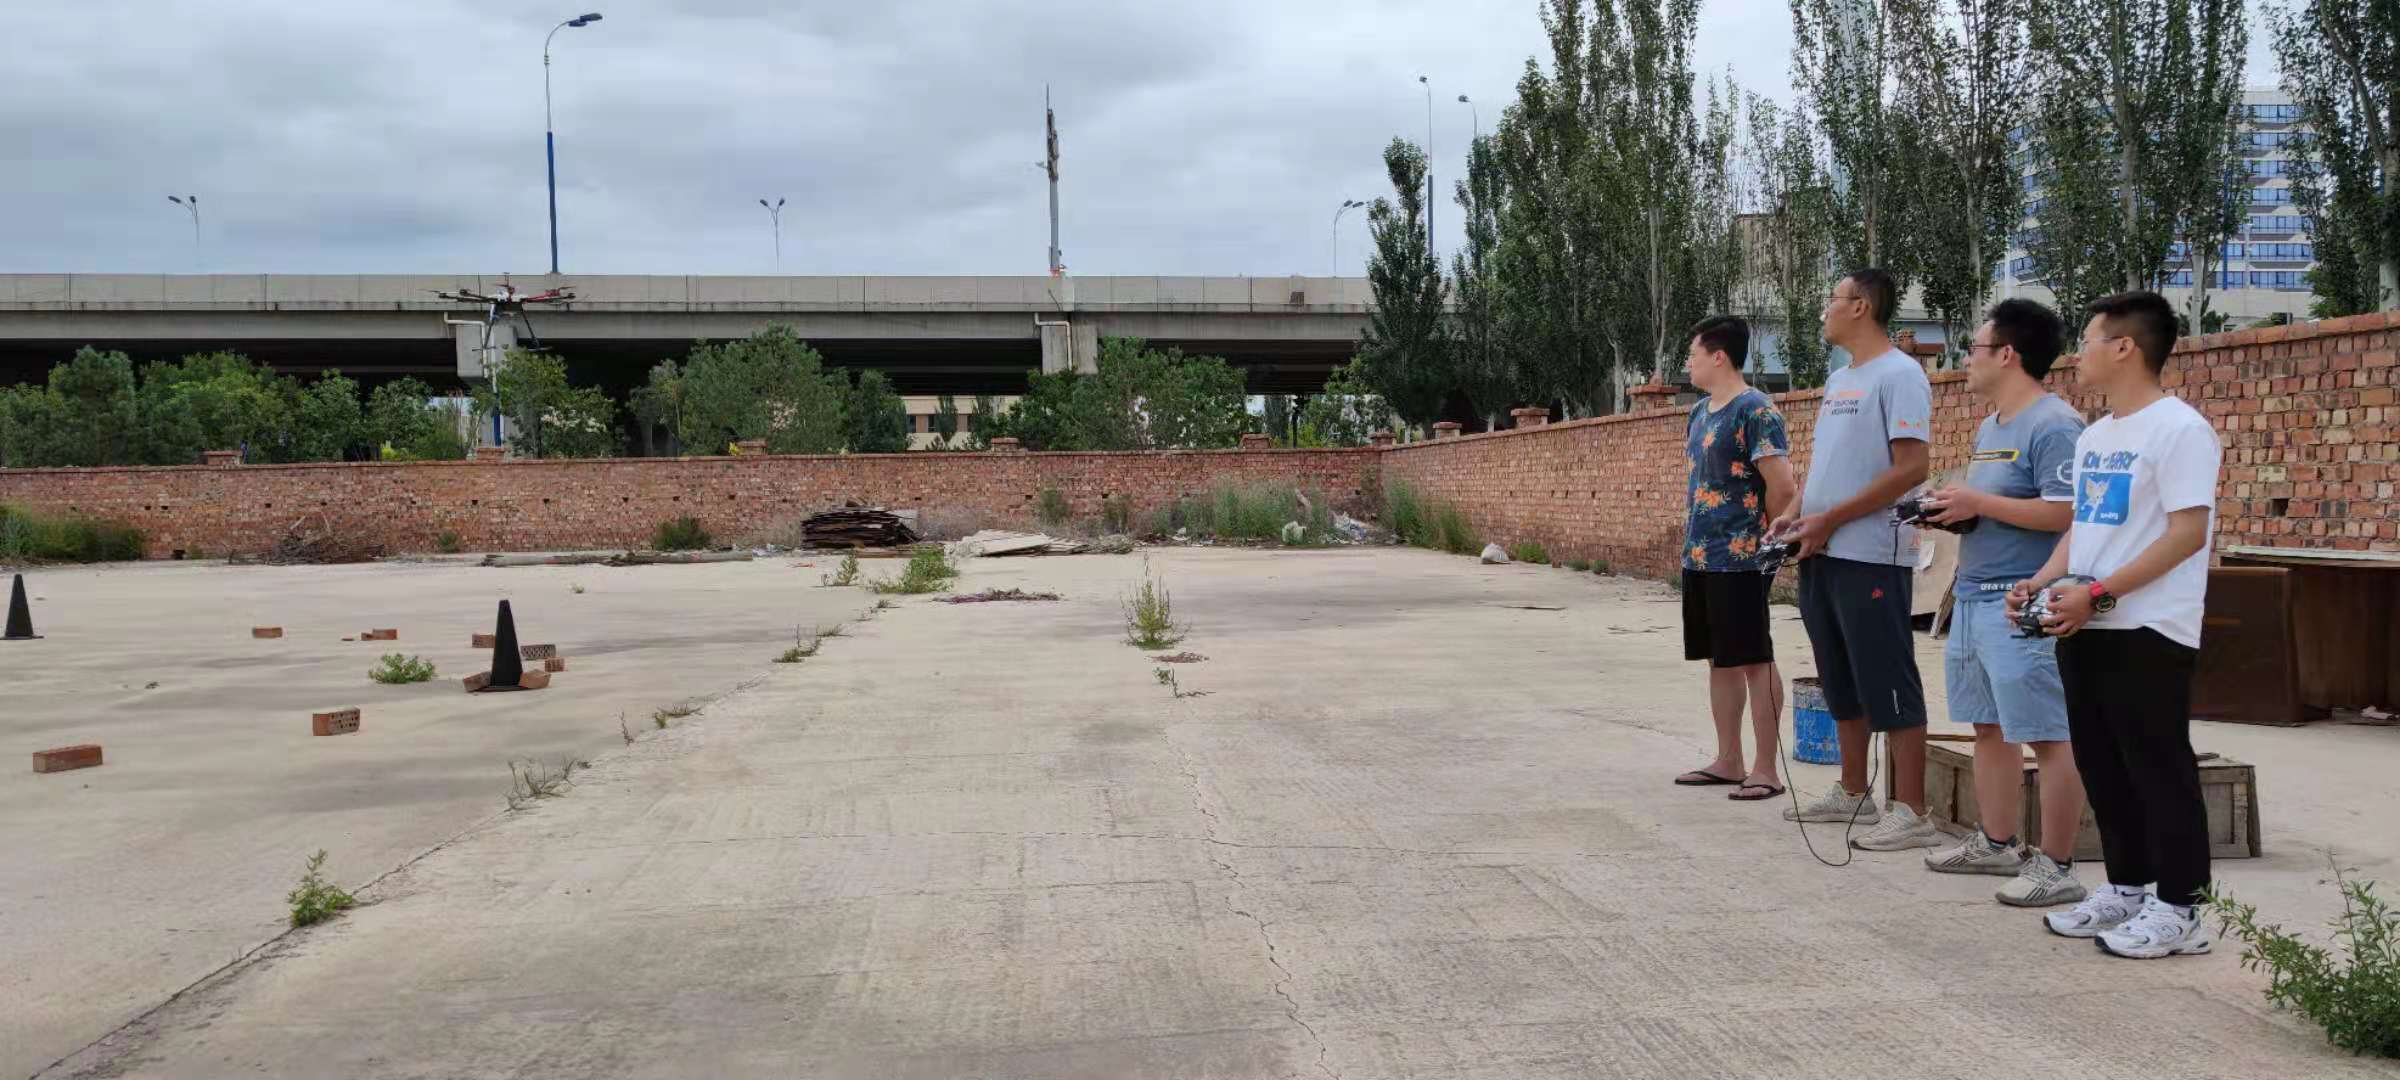 内蒙古无人机九月份超视距上电考图片